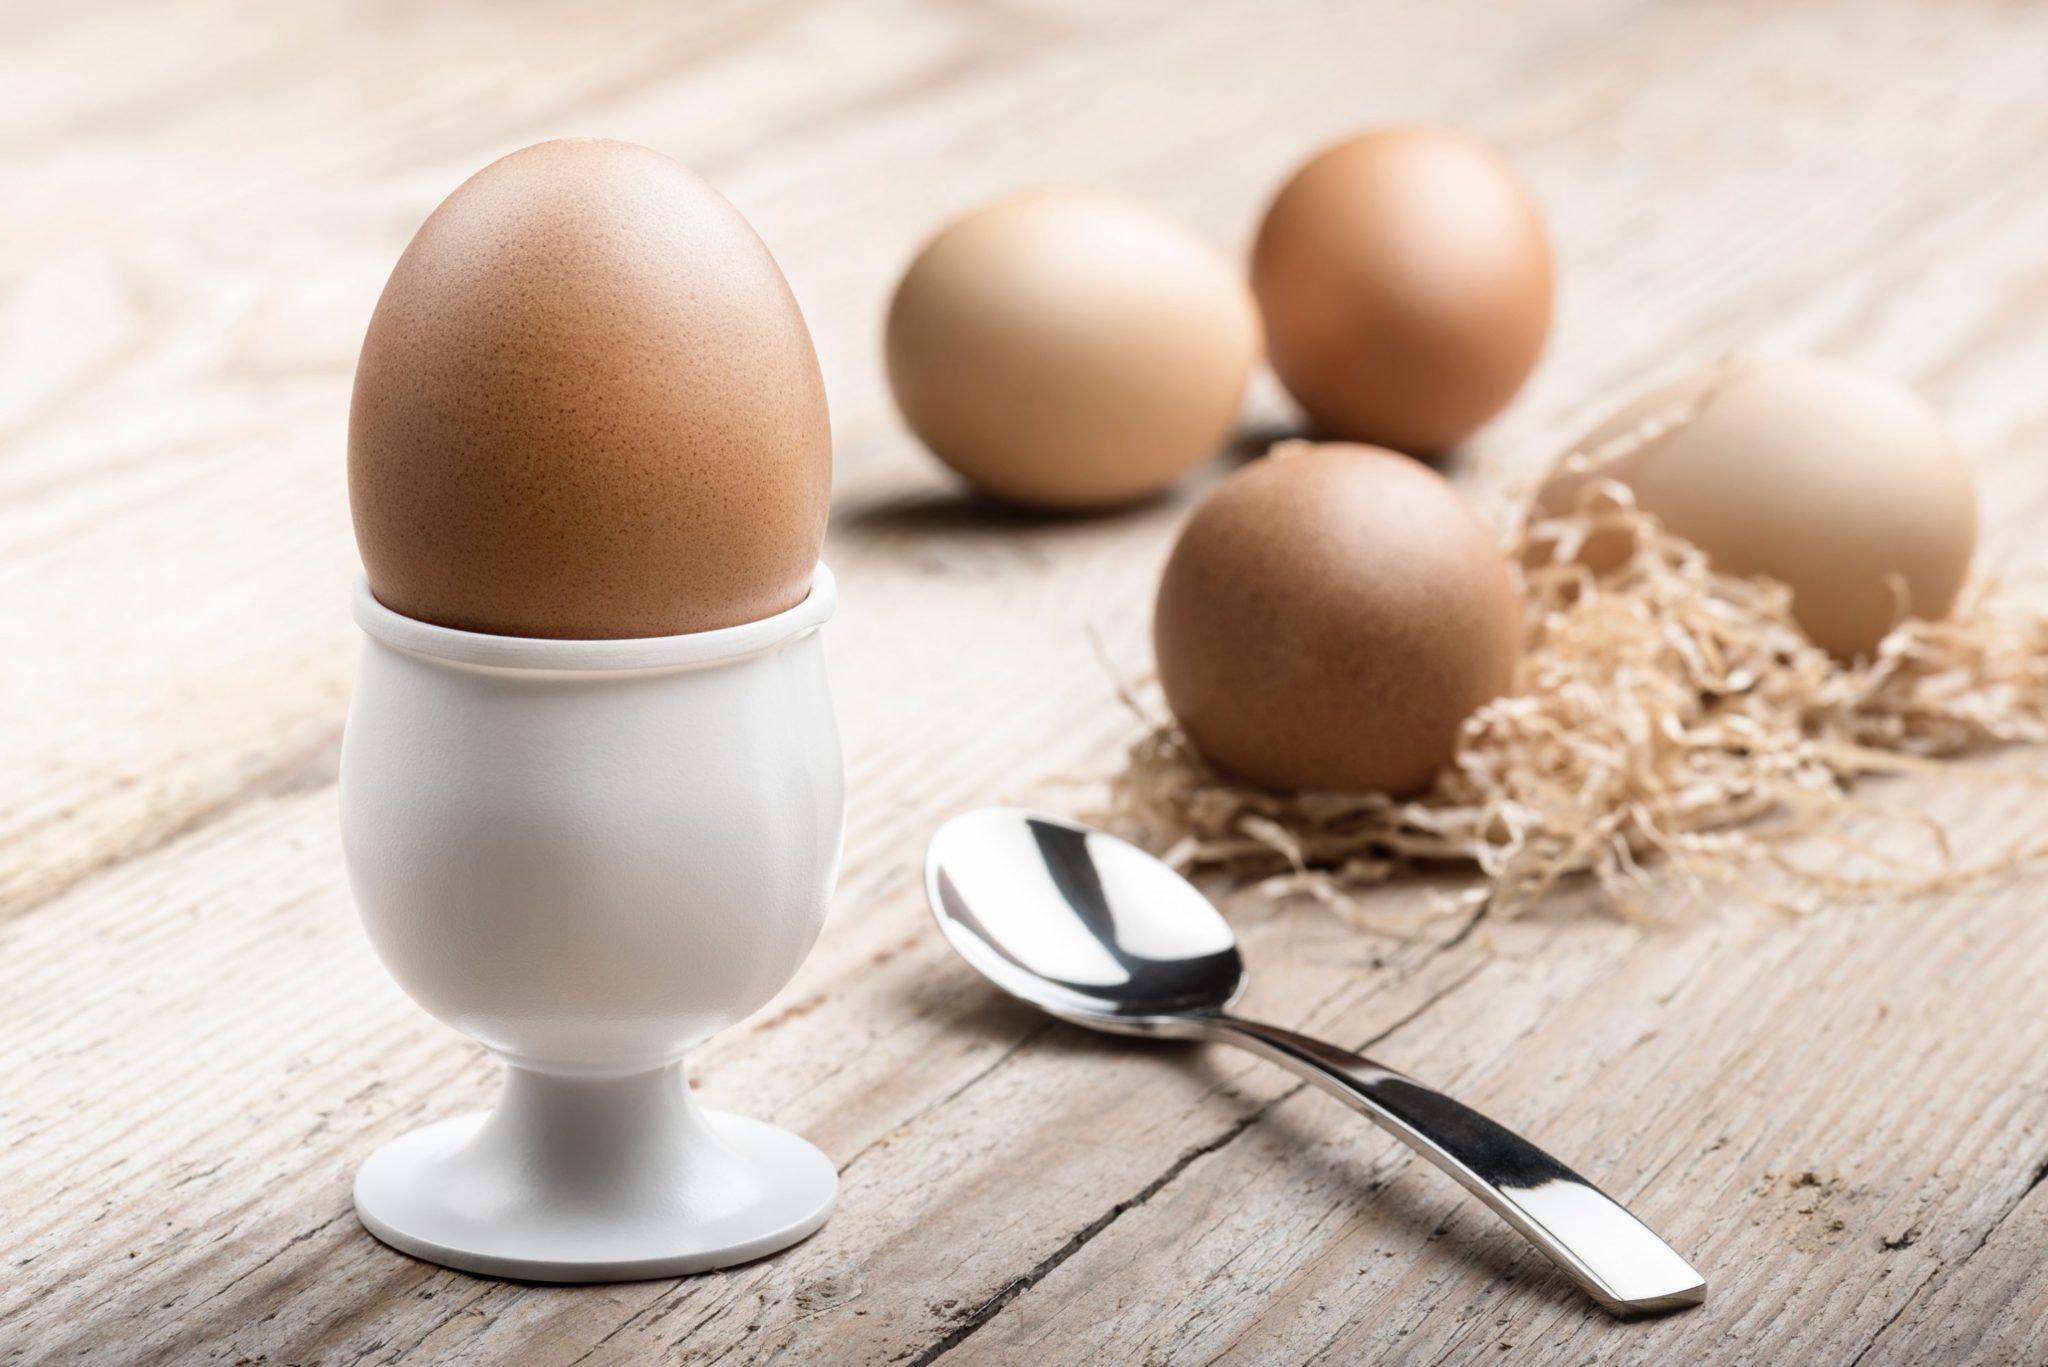 Eat healthy cholesterol rich eggs